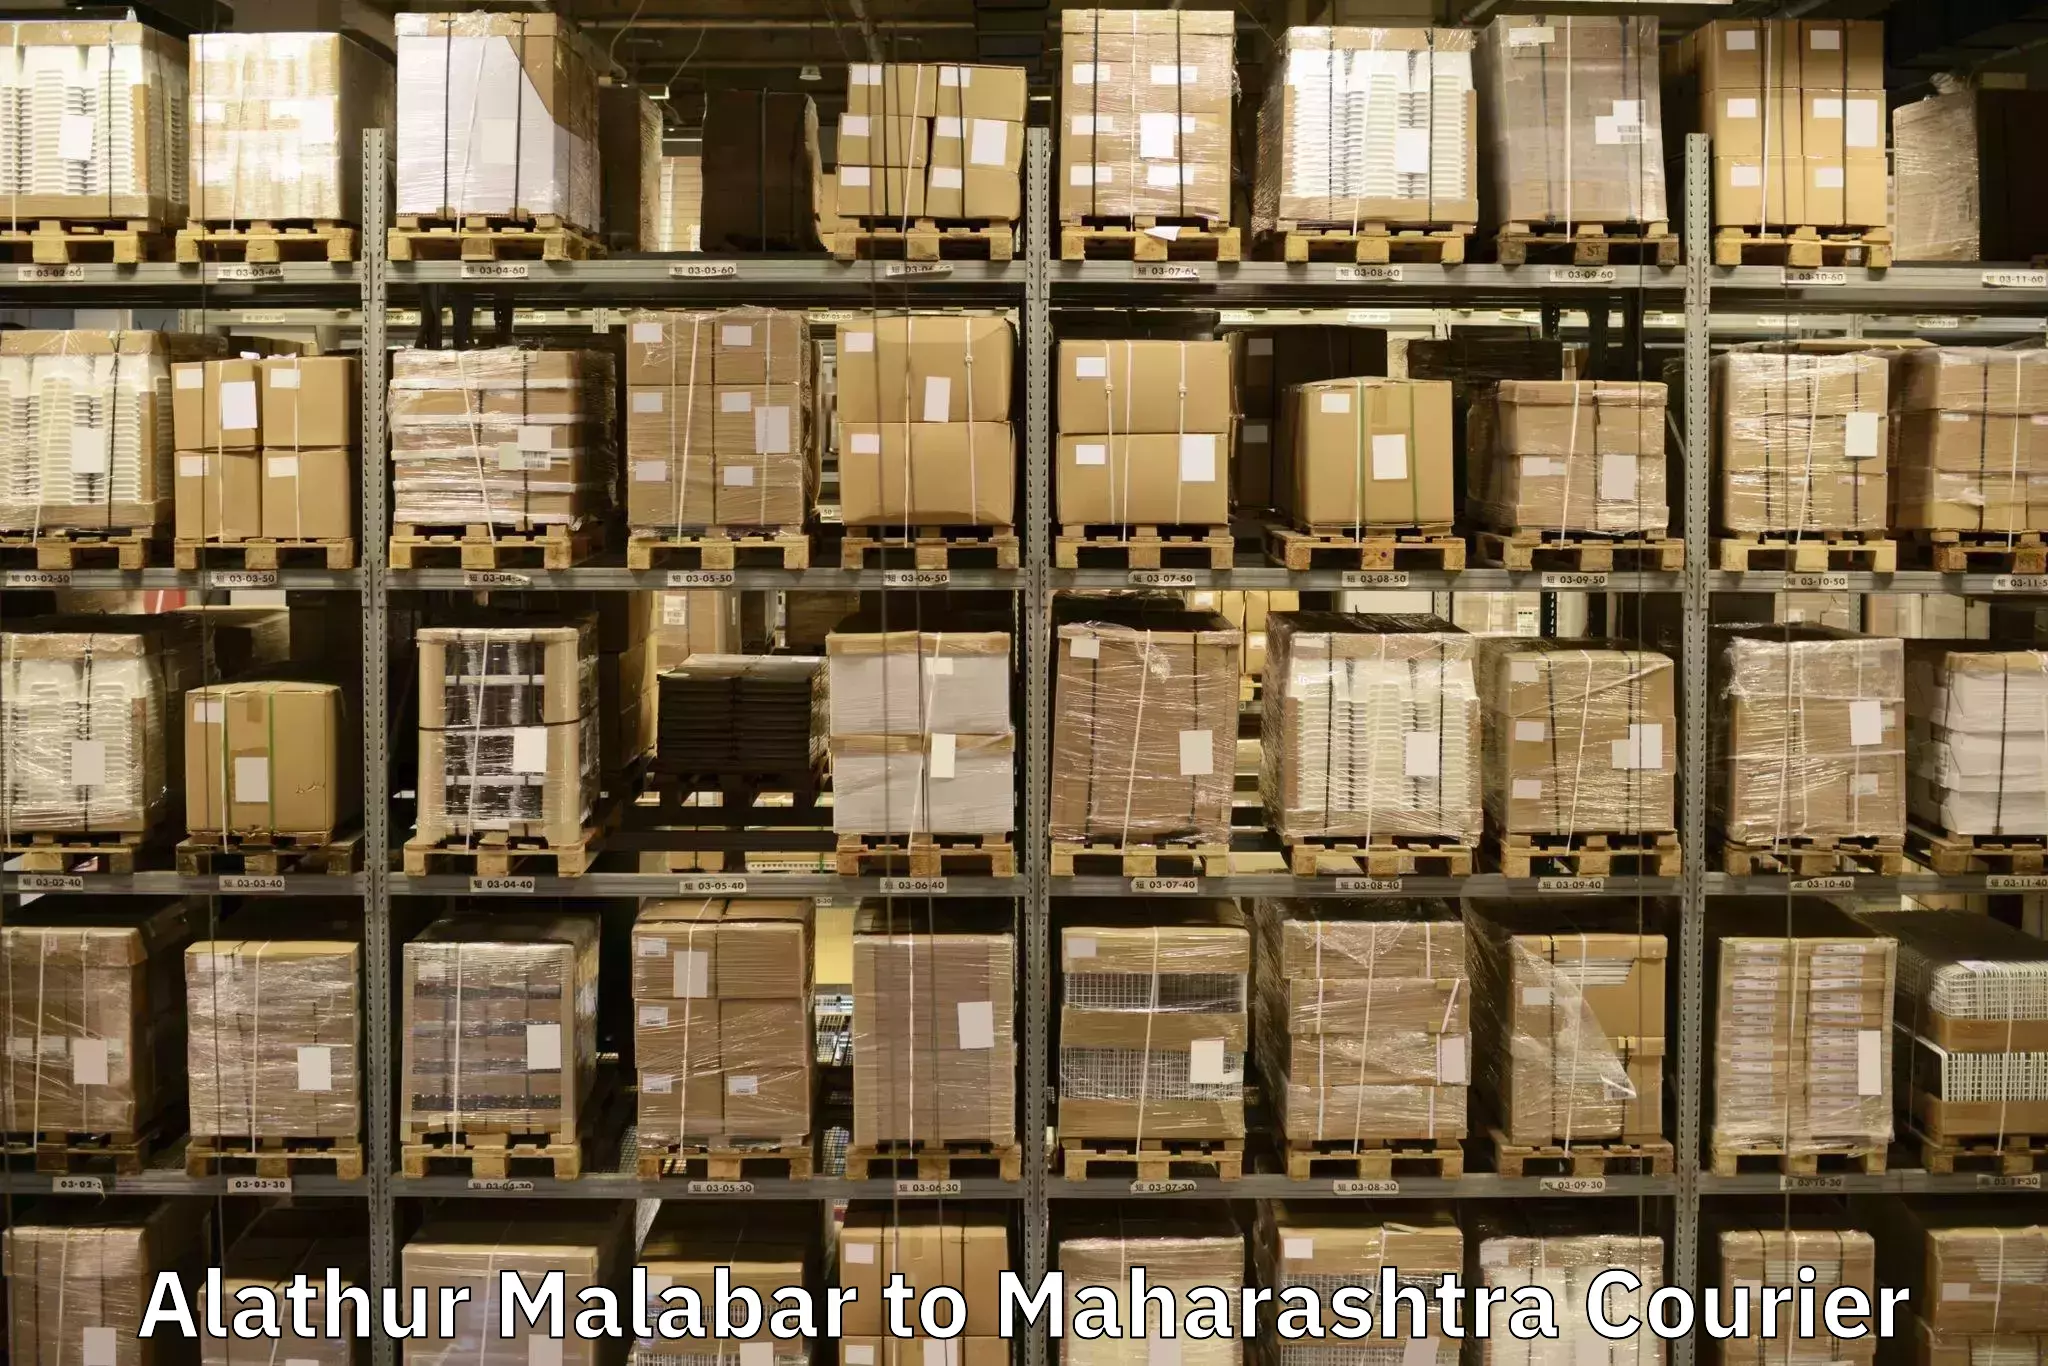 Professional goods transport Alathur Malabar to Patan Satara